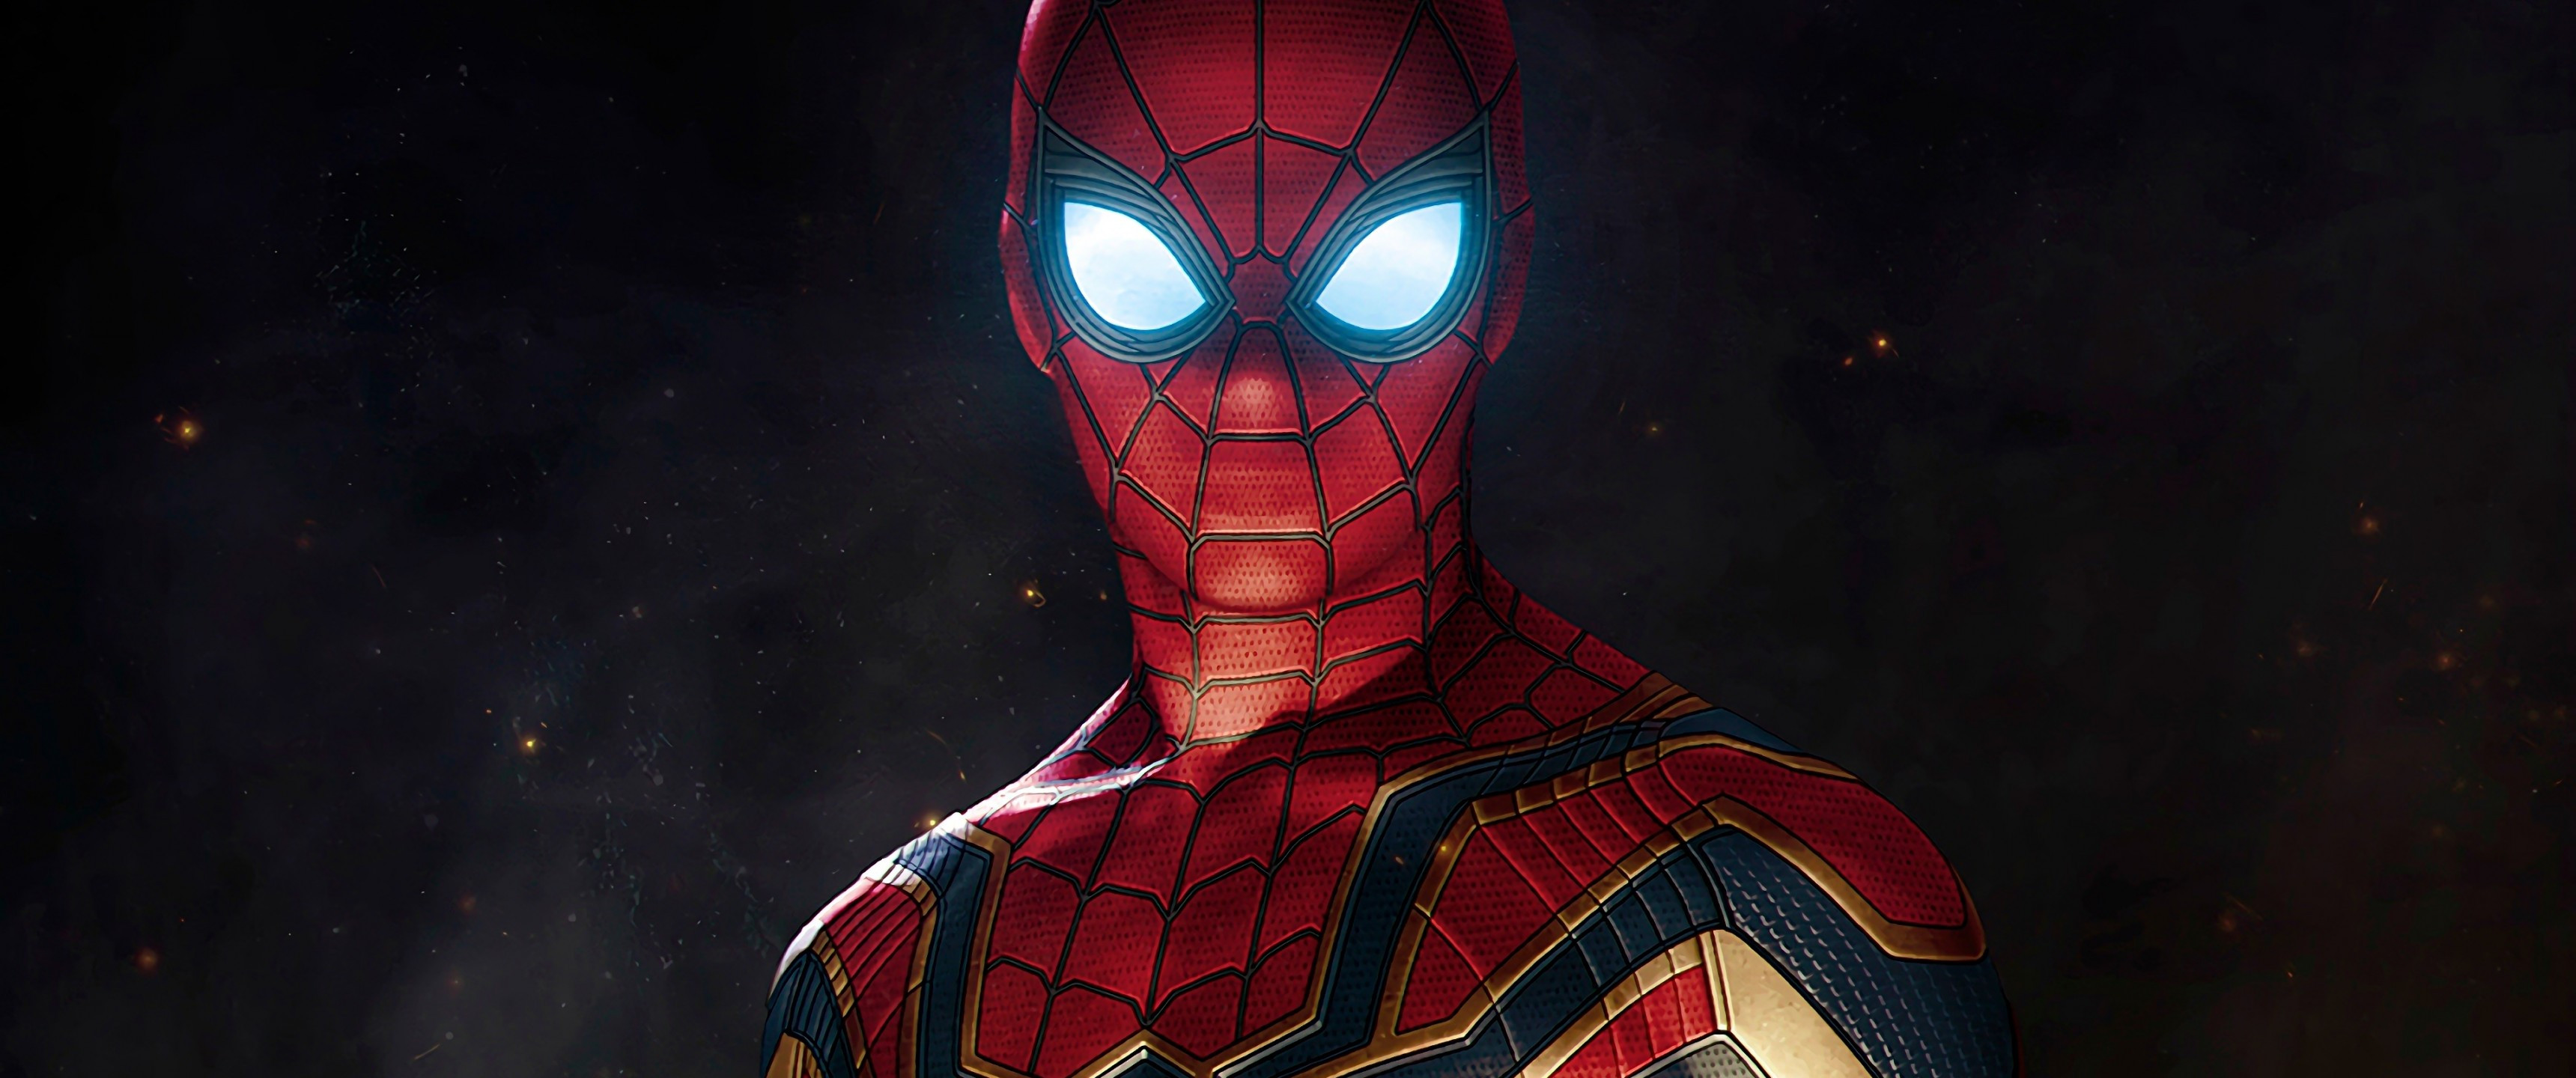 Avengers Infinity War Spider Man Wallpaper